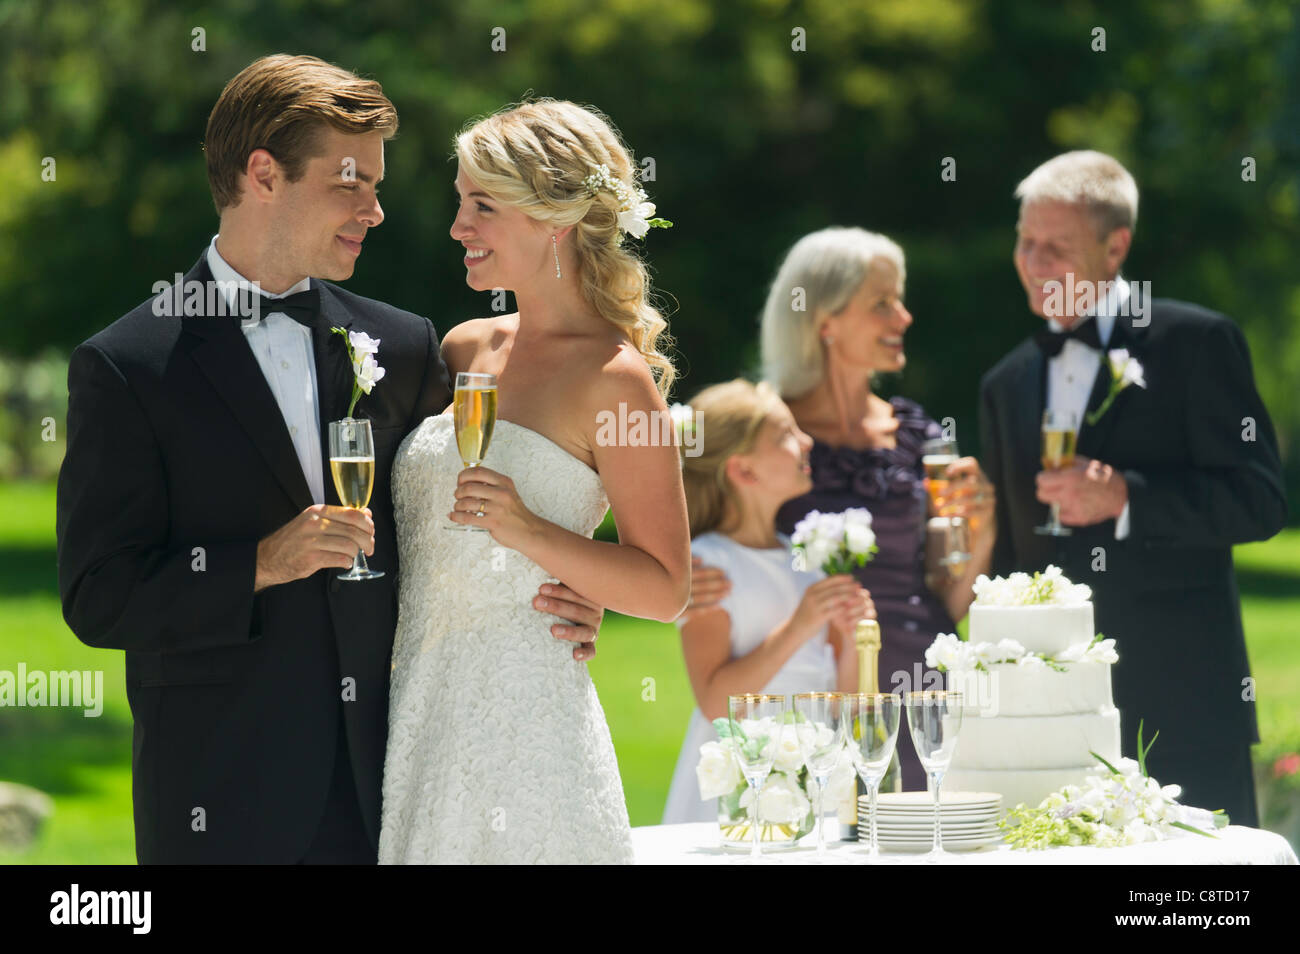 Stati Uniti d'America, nello Stato di New York, Old Westbury, la sposa e lo sposo a ricevimento di nozze, persone in background Foto Stock